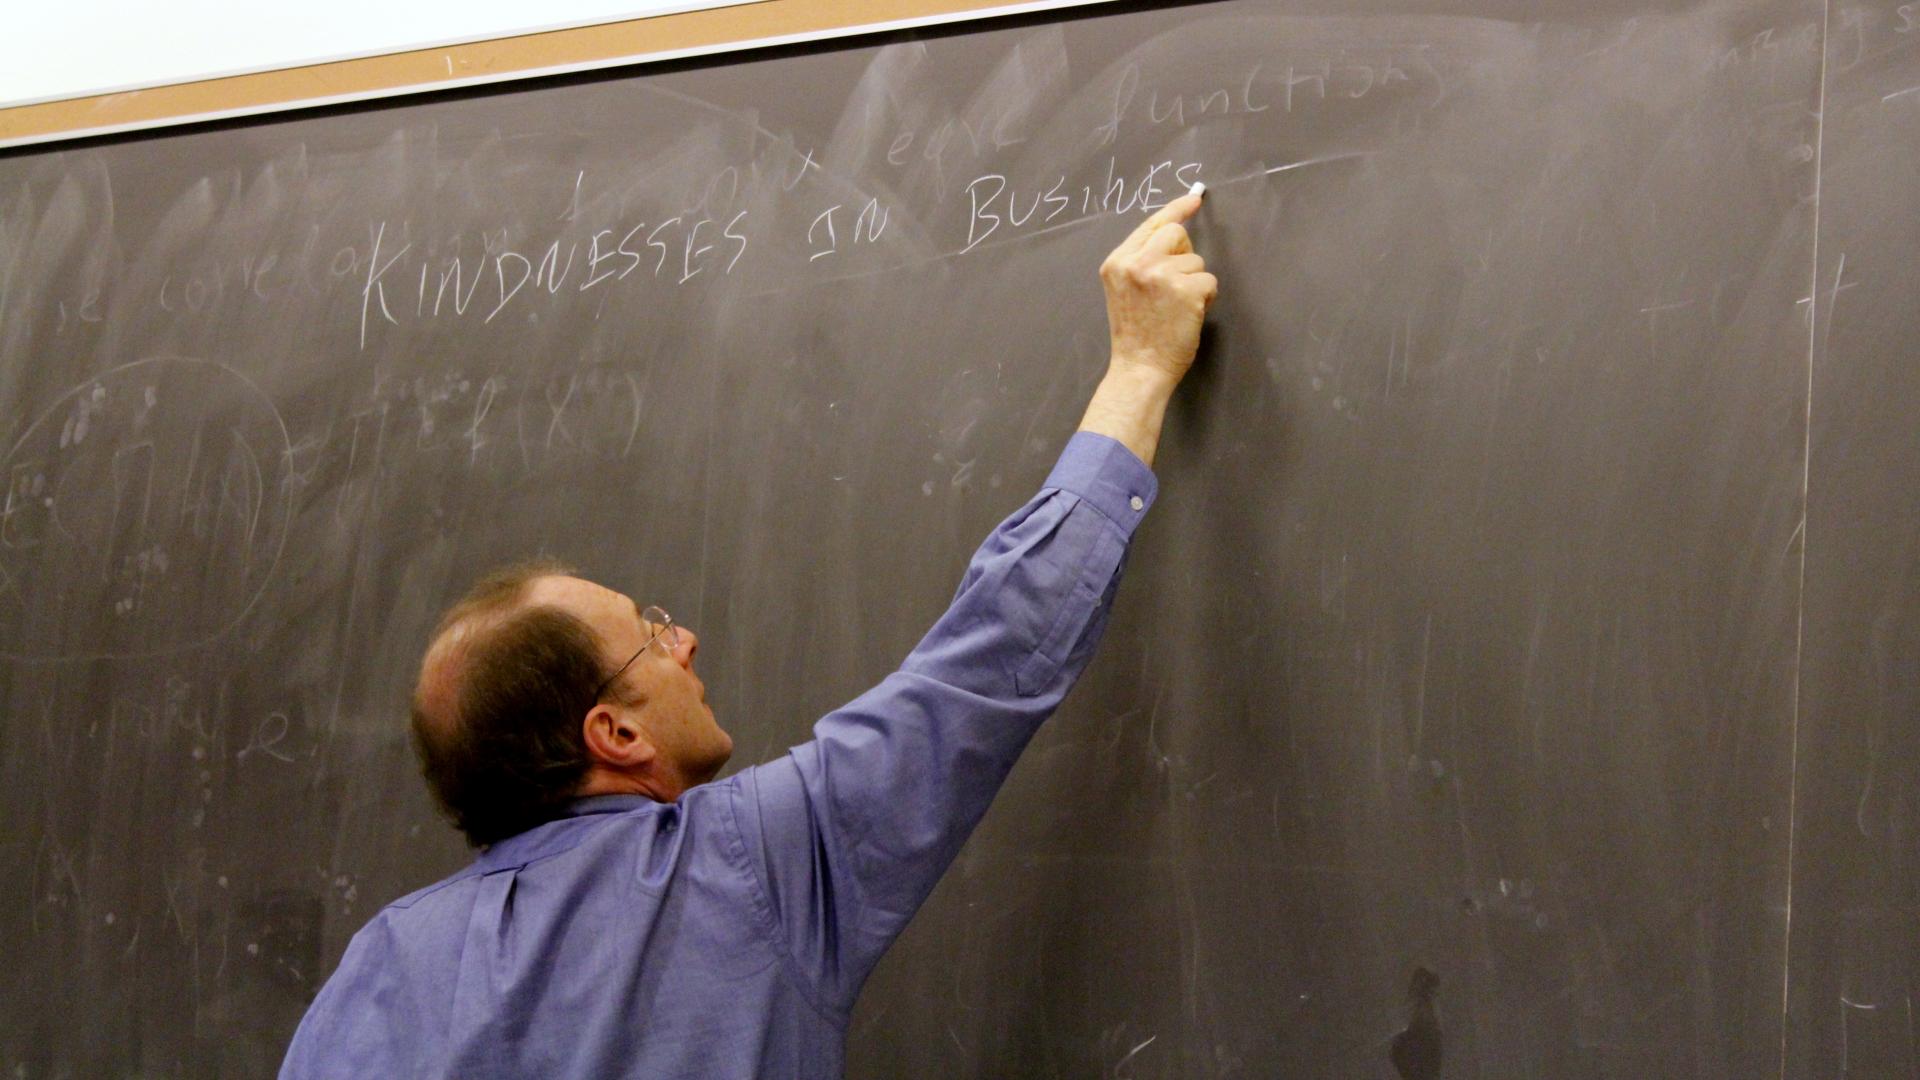 Wharton Professor writing on chalkboard